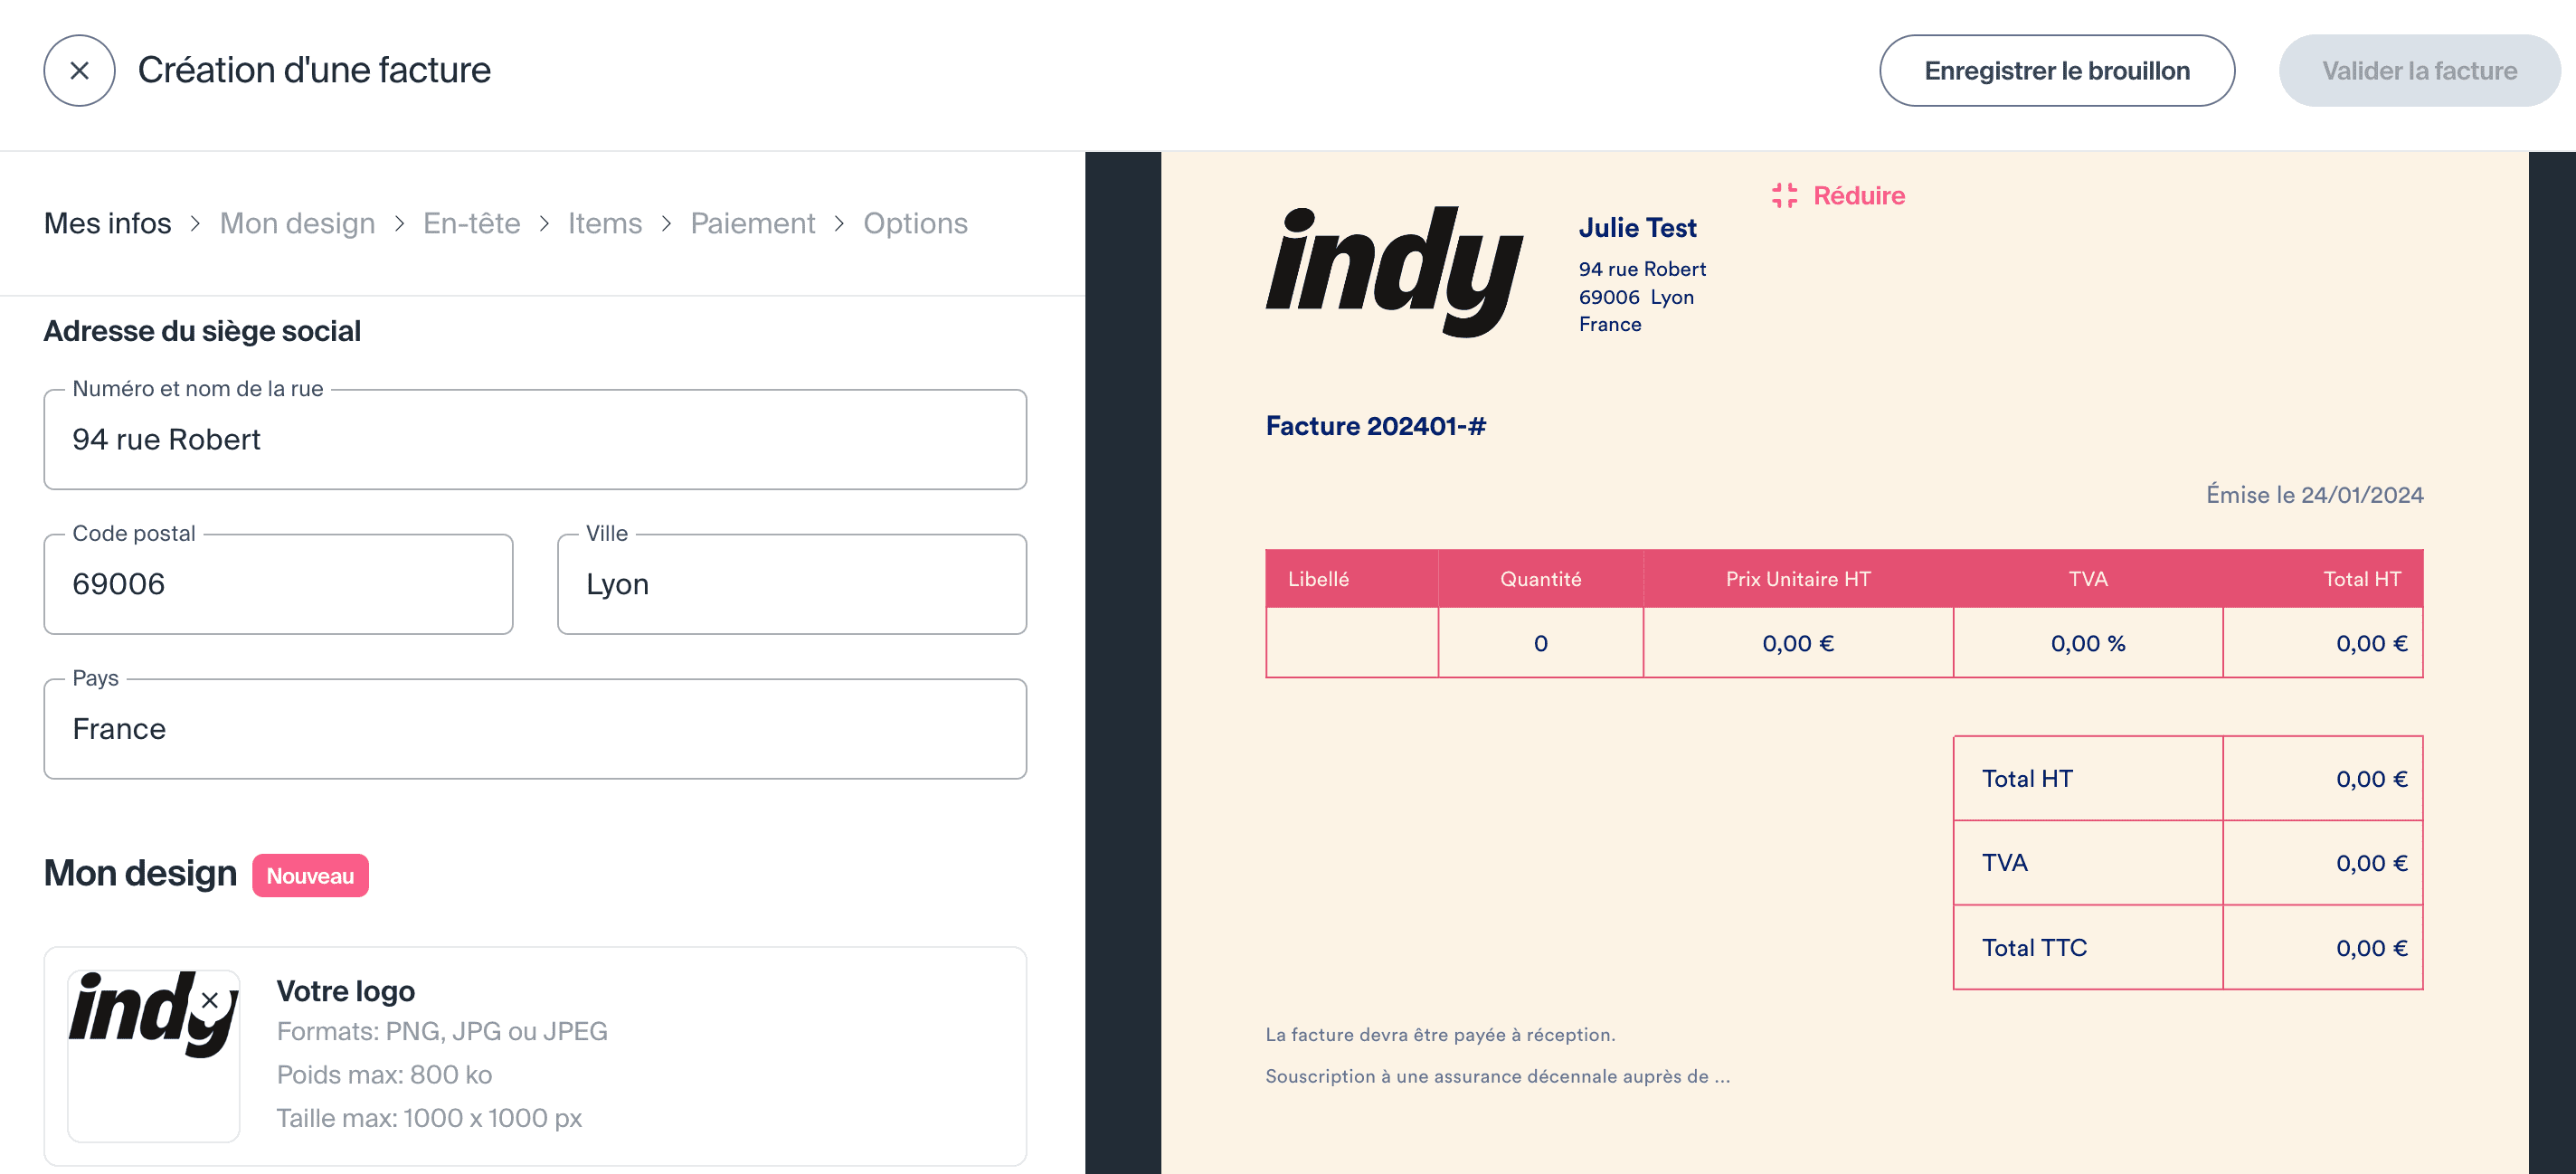 édition de la facture sur Indy : ajout des informations au sujet de la micro-entreprise 